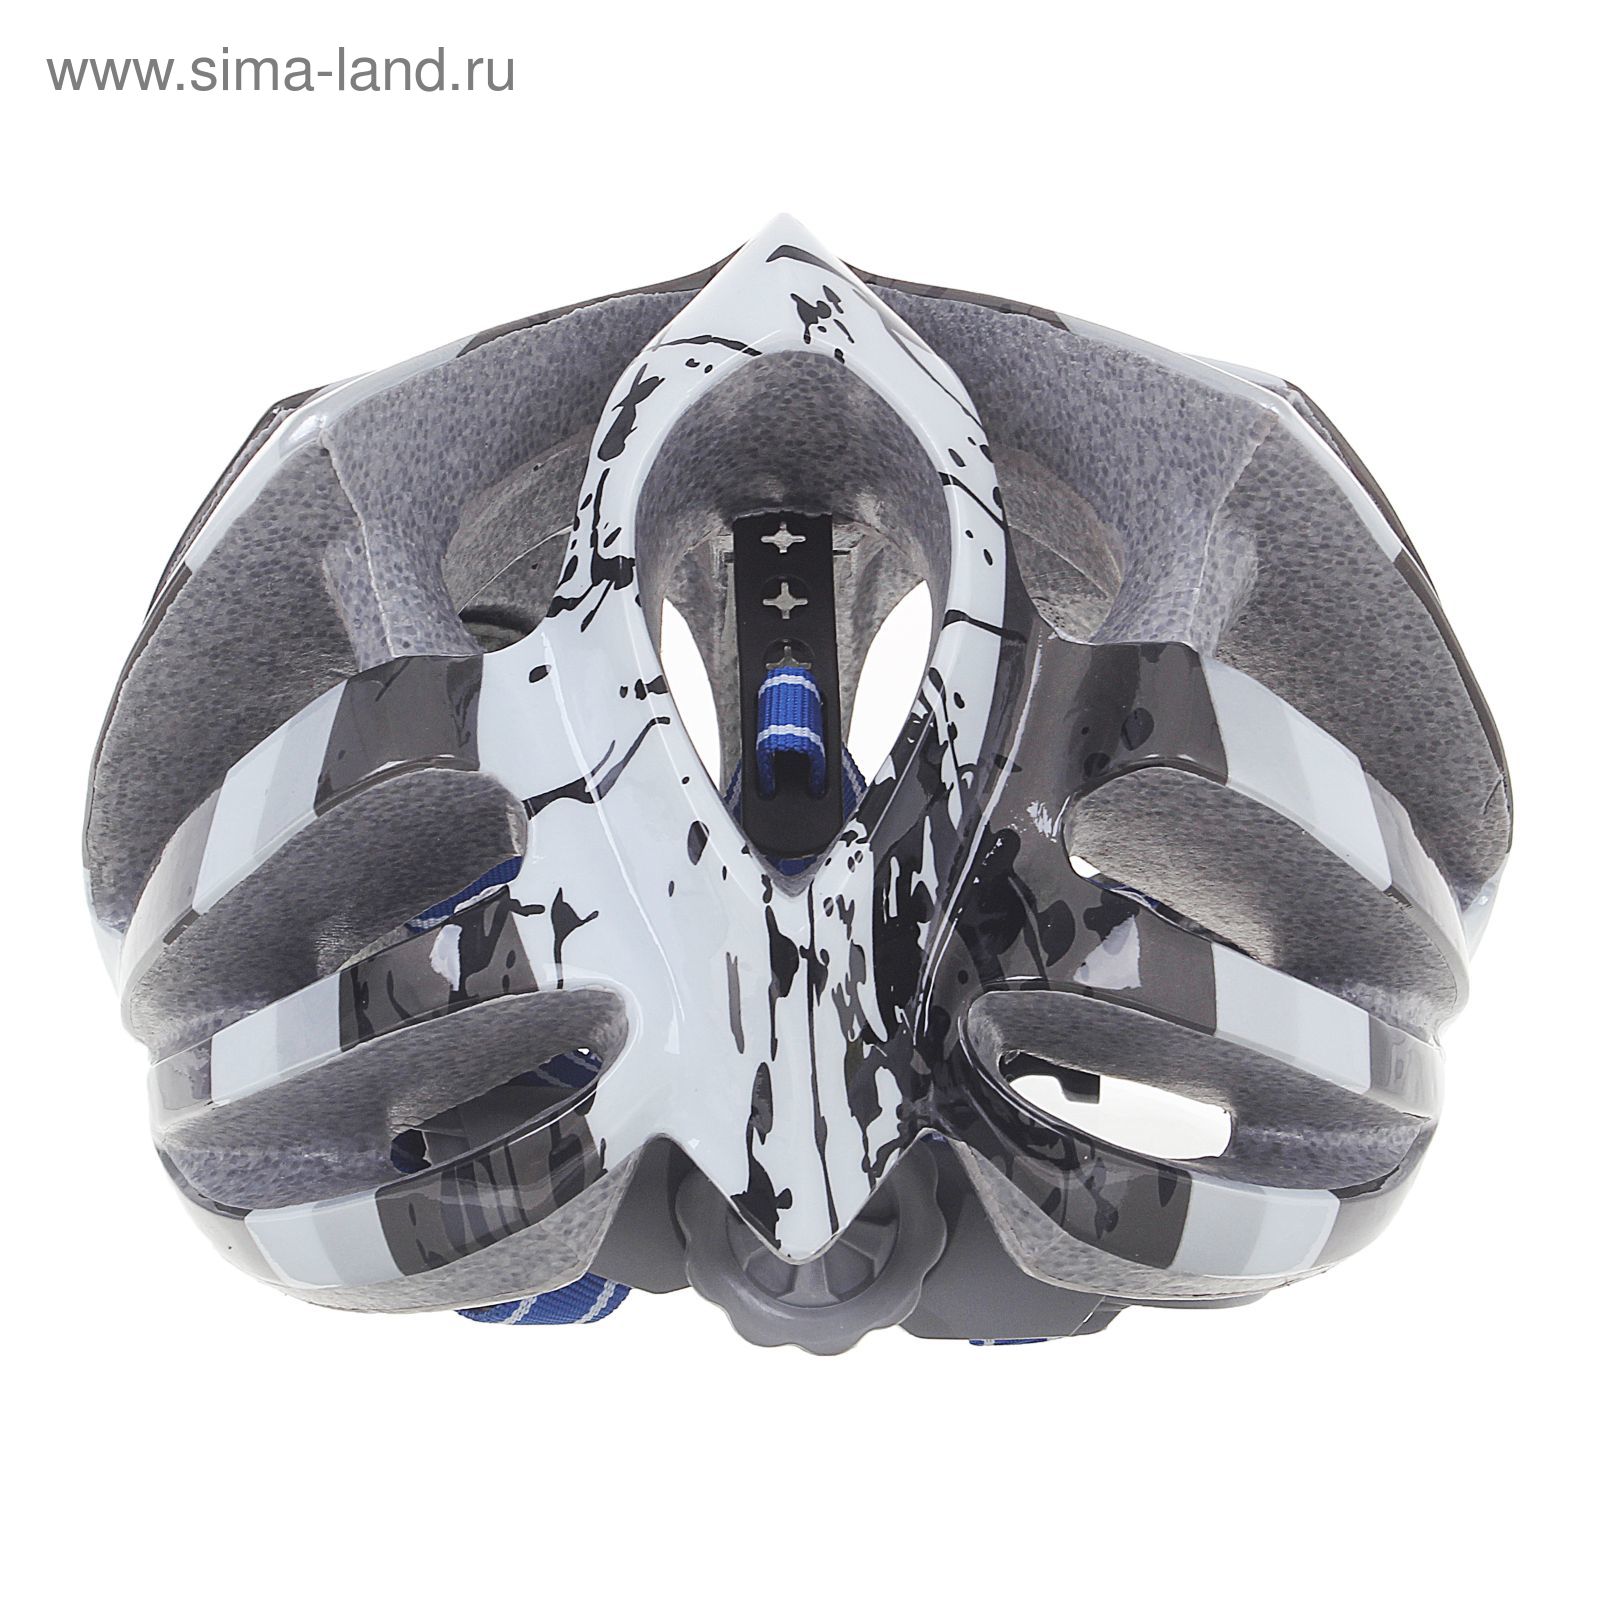 Шлем велосипедиста взрослый ОТ-T23, черно-белый, диаметр 54 см